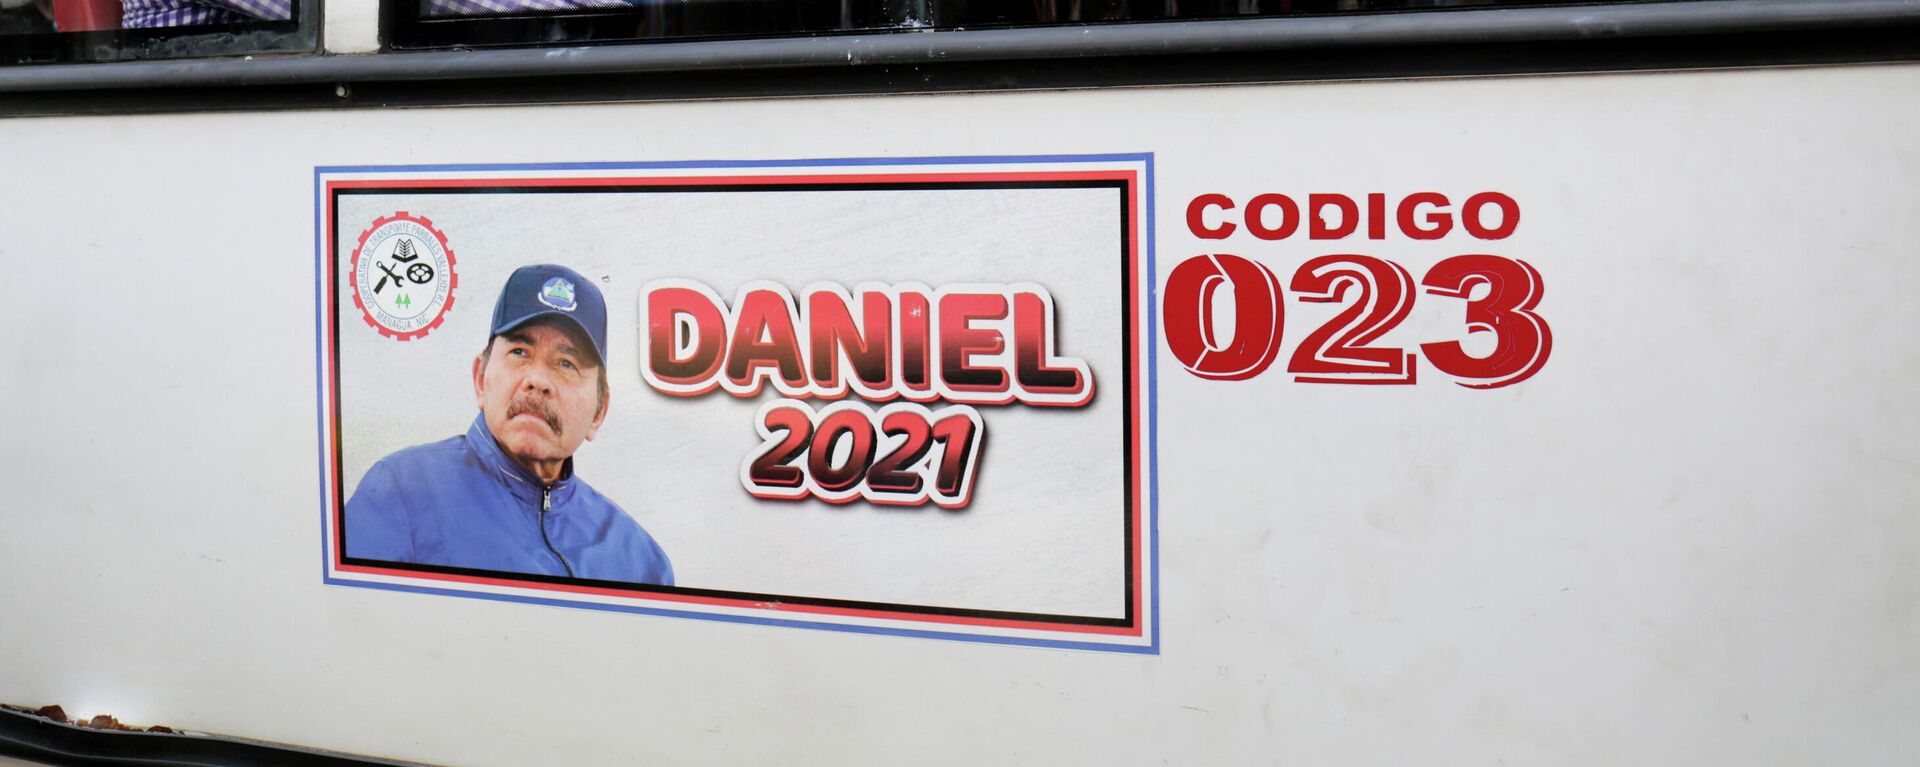 Un autobús con un cartel del presidente y candidato presidencial Daniel Ortega en Managua, Nicaragua - Sputnik Mundo, 1920, 06.11.2021